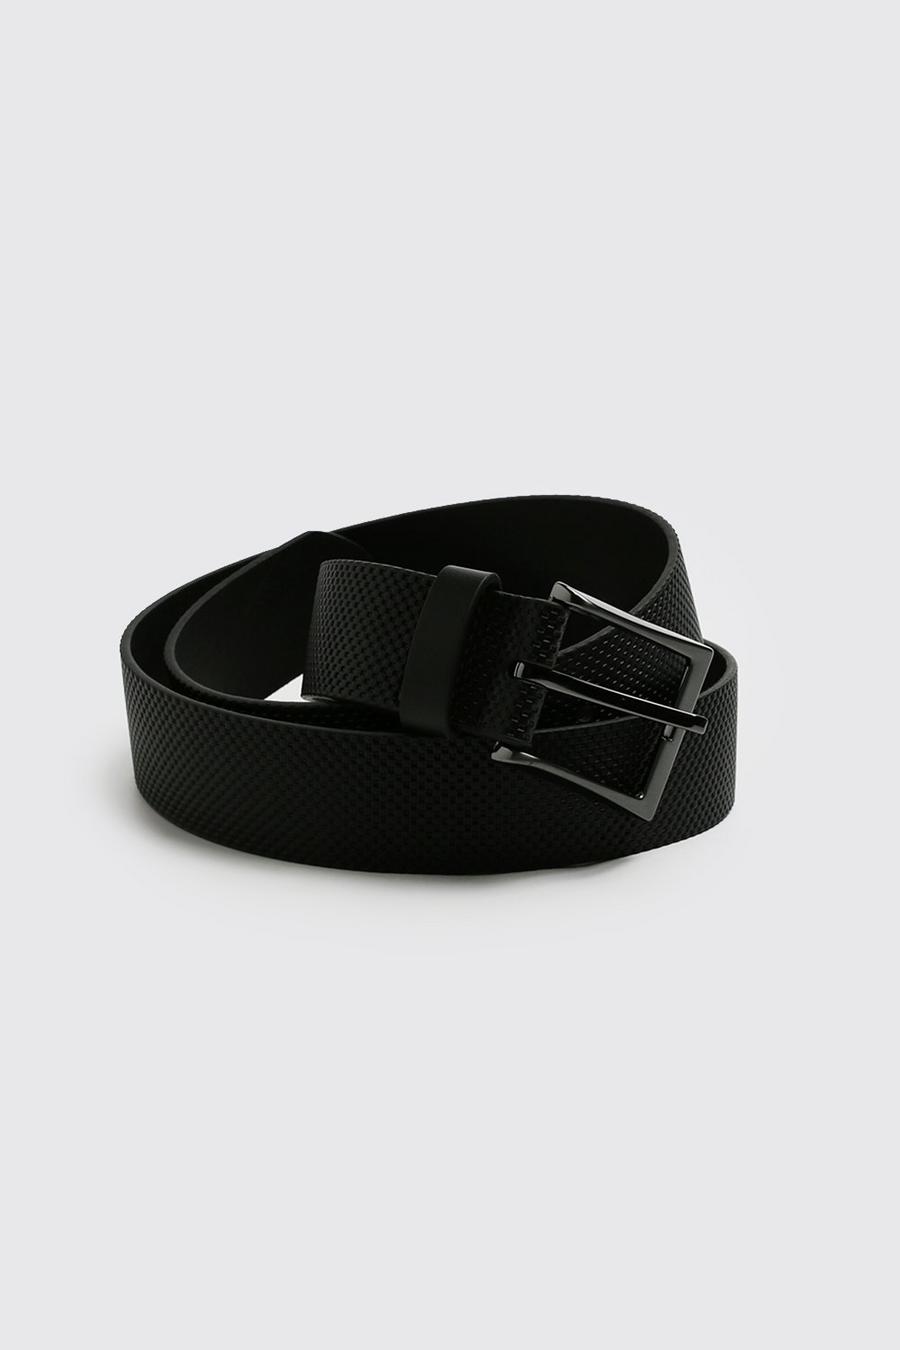 Cinturón de cuero sintético texturizado, Black nero